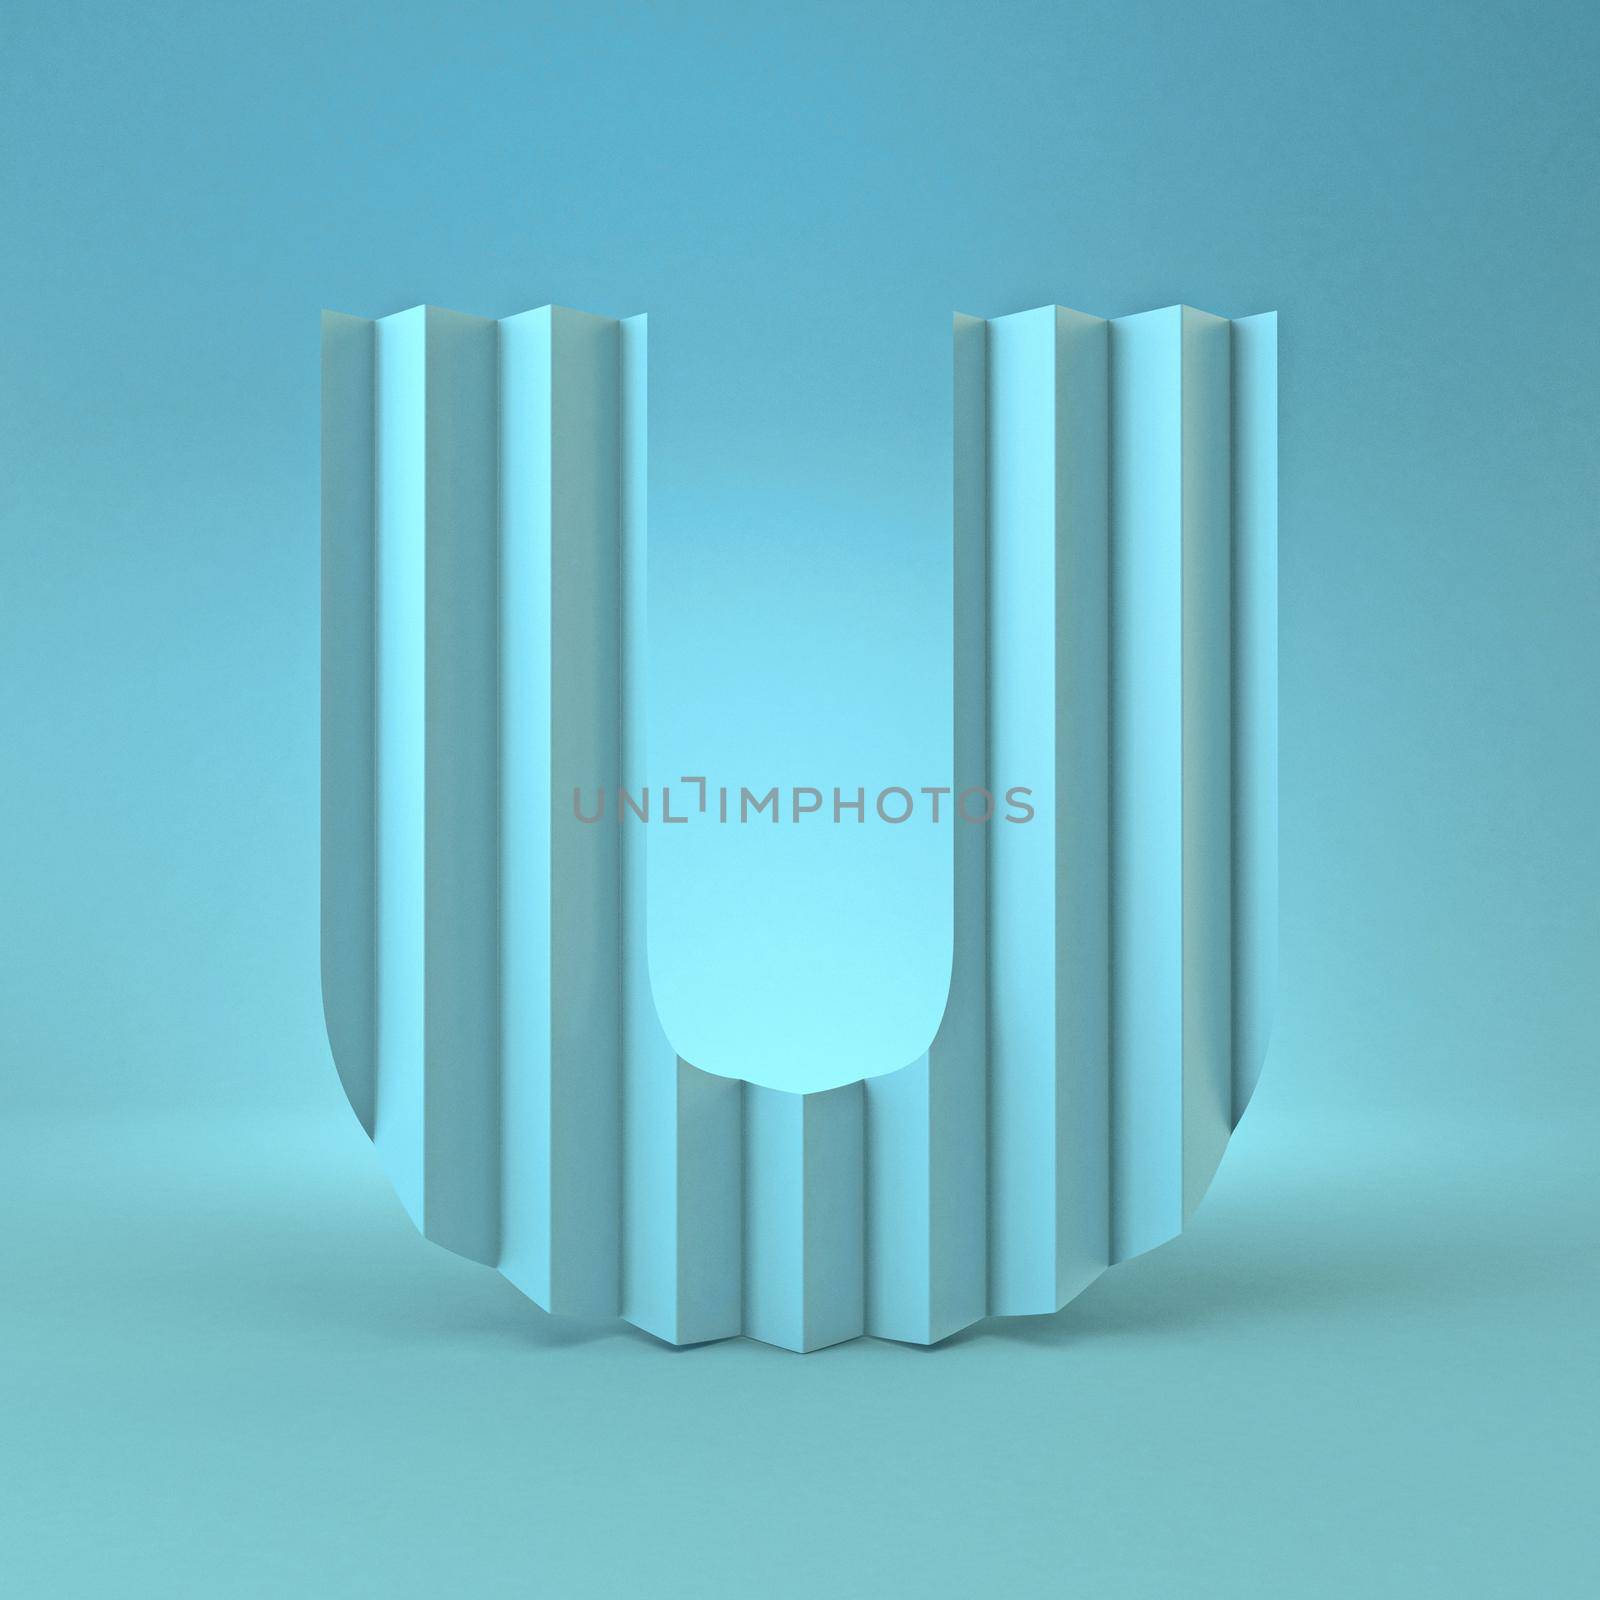 Cold blue font Letter U 3D render illustration on blue background